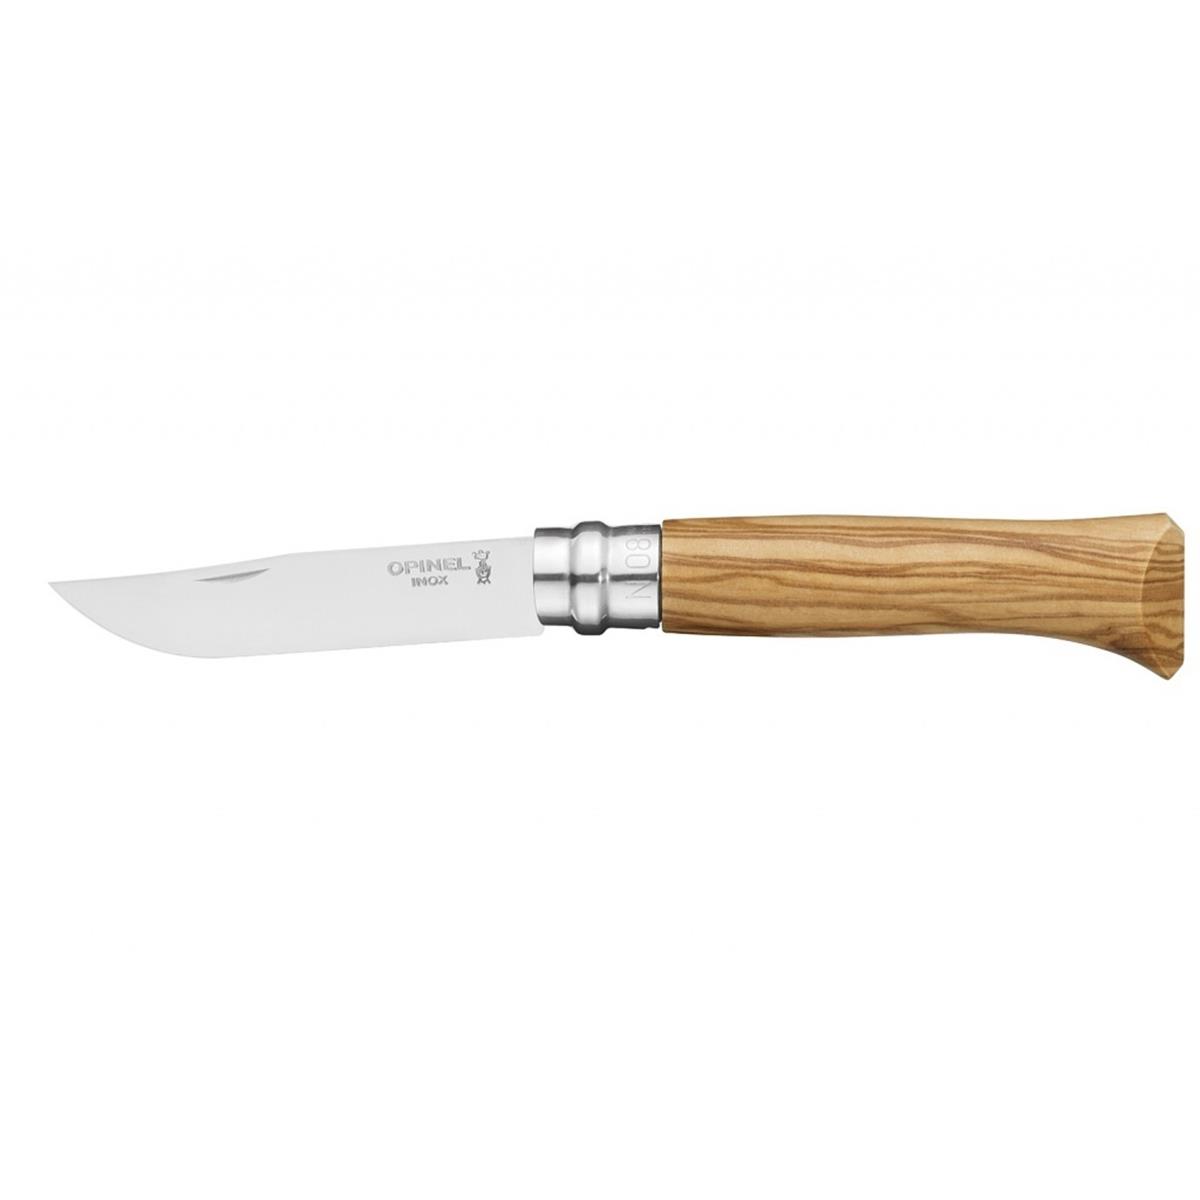 Нож филейный №8 VRI Folding Slim Olivewood нерж.сталь, длина клинка 8см (0011443) OPINEL кастрюля 2 9 л нерж